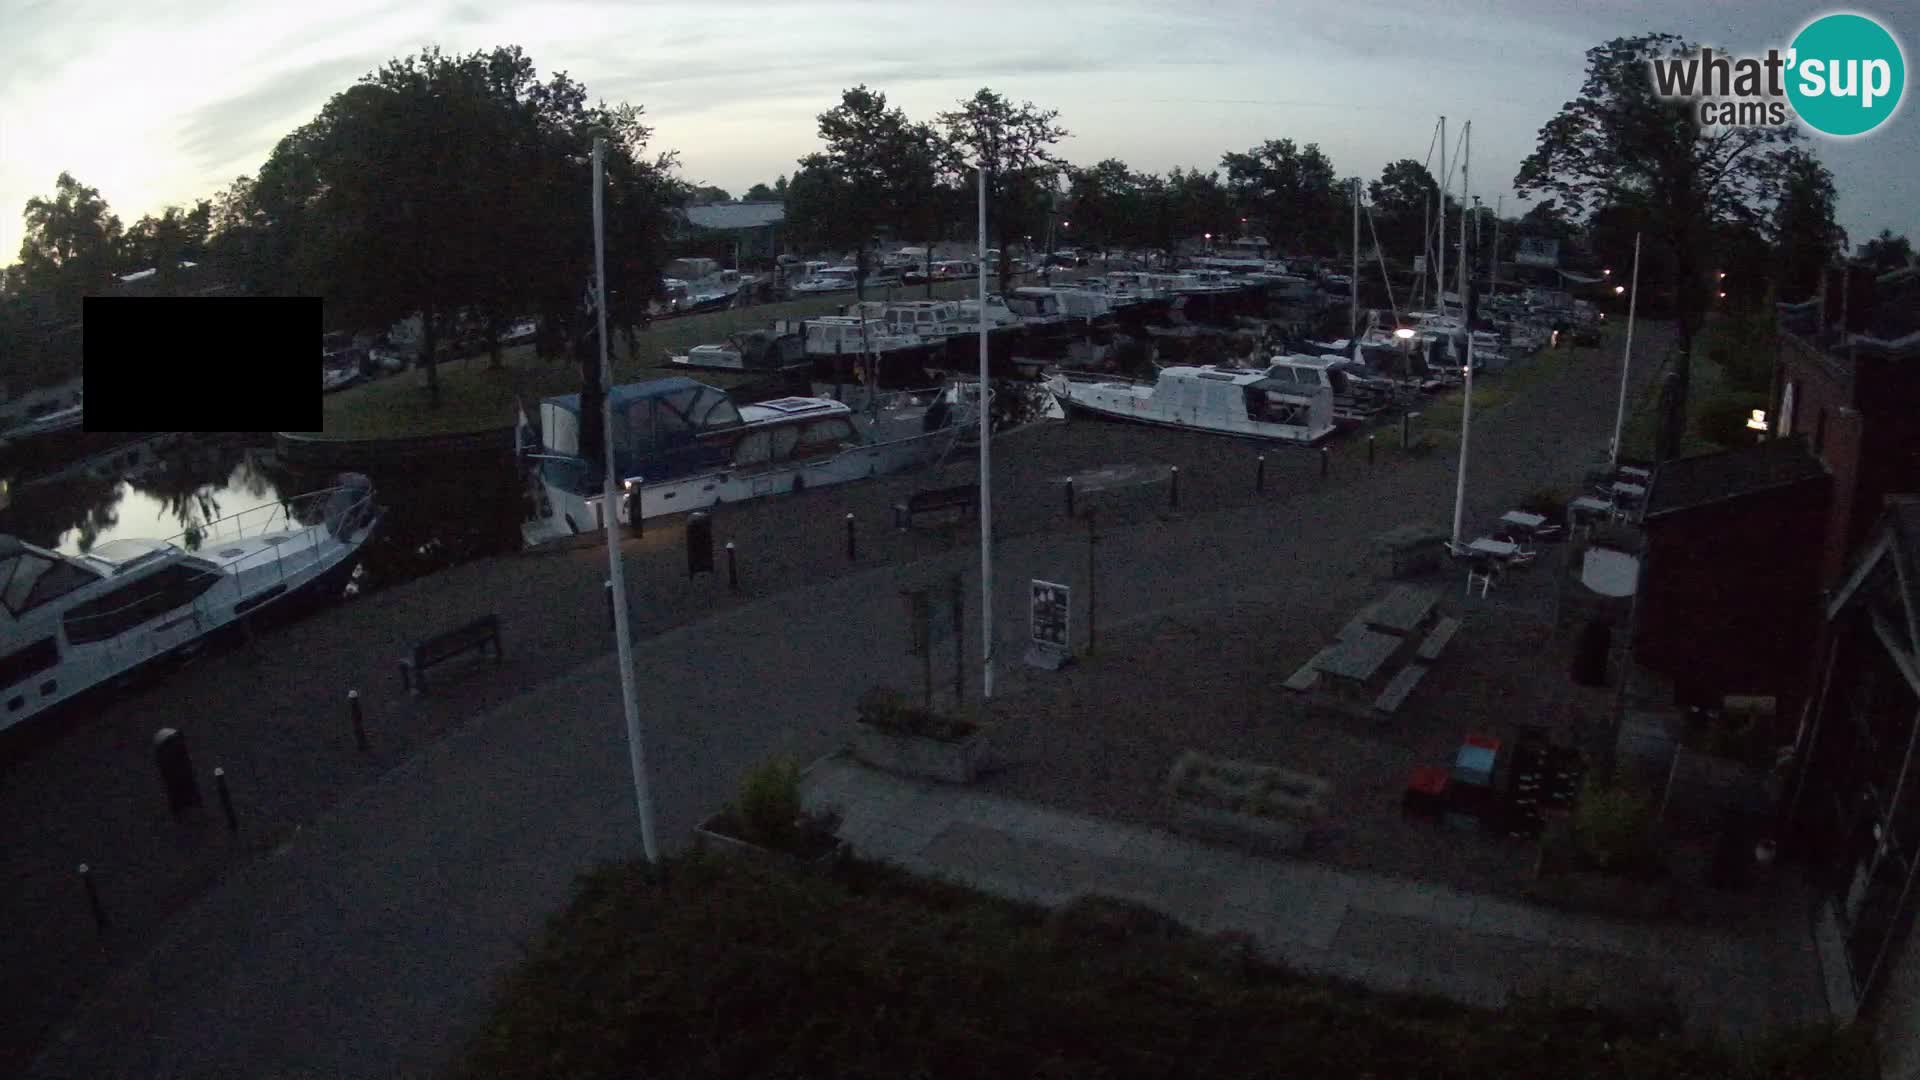 Le port de Joure livecam